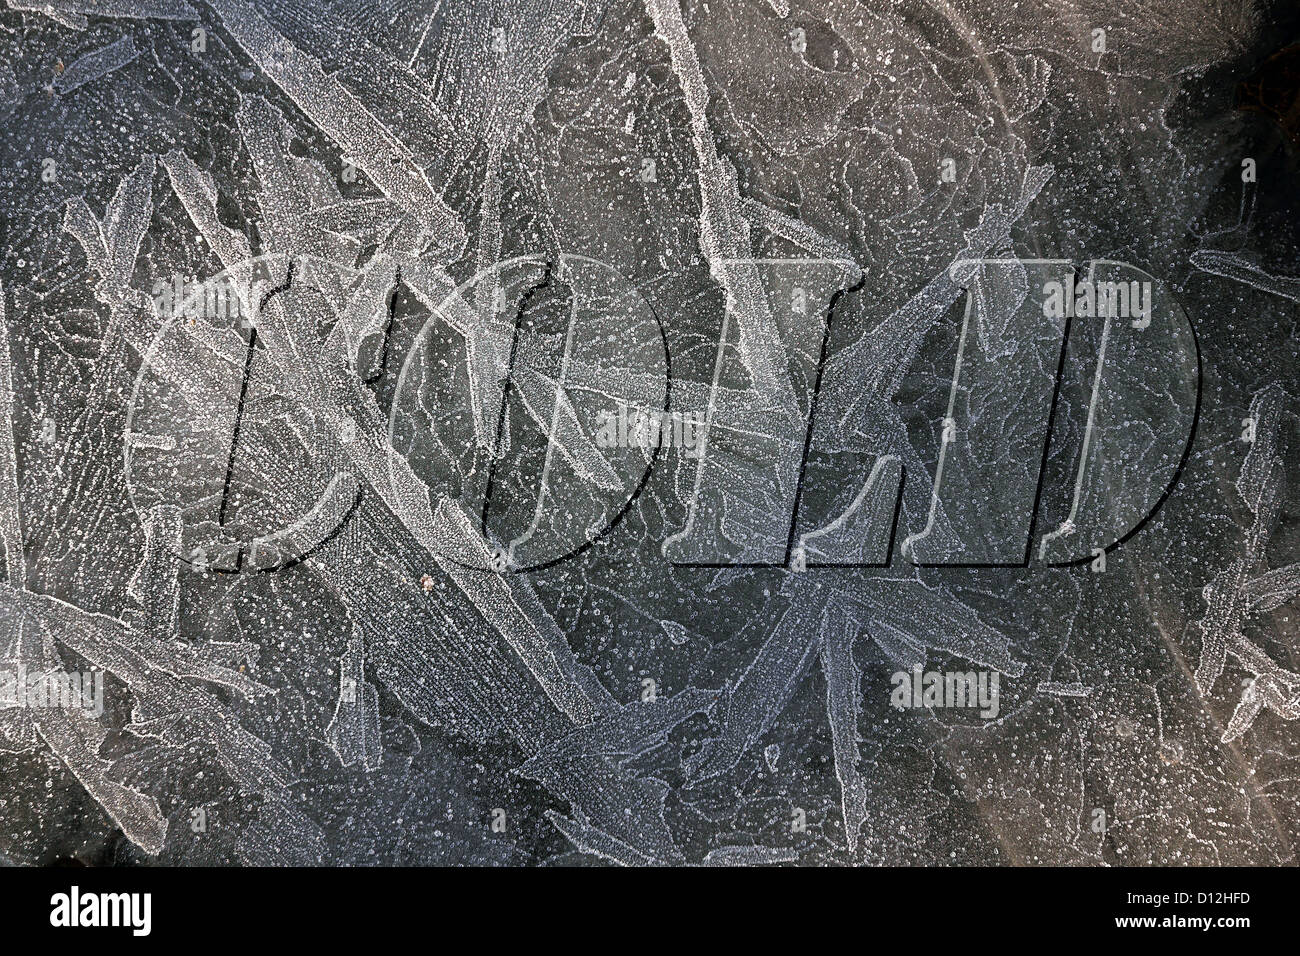 Patrones helada hoar en charcos congelados con letras en relieve añadido digitalmente, Leicestershire, REINO UNIDO Foto de stock